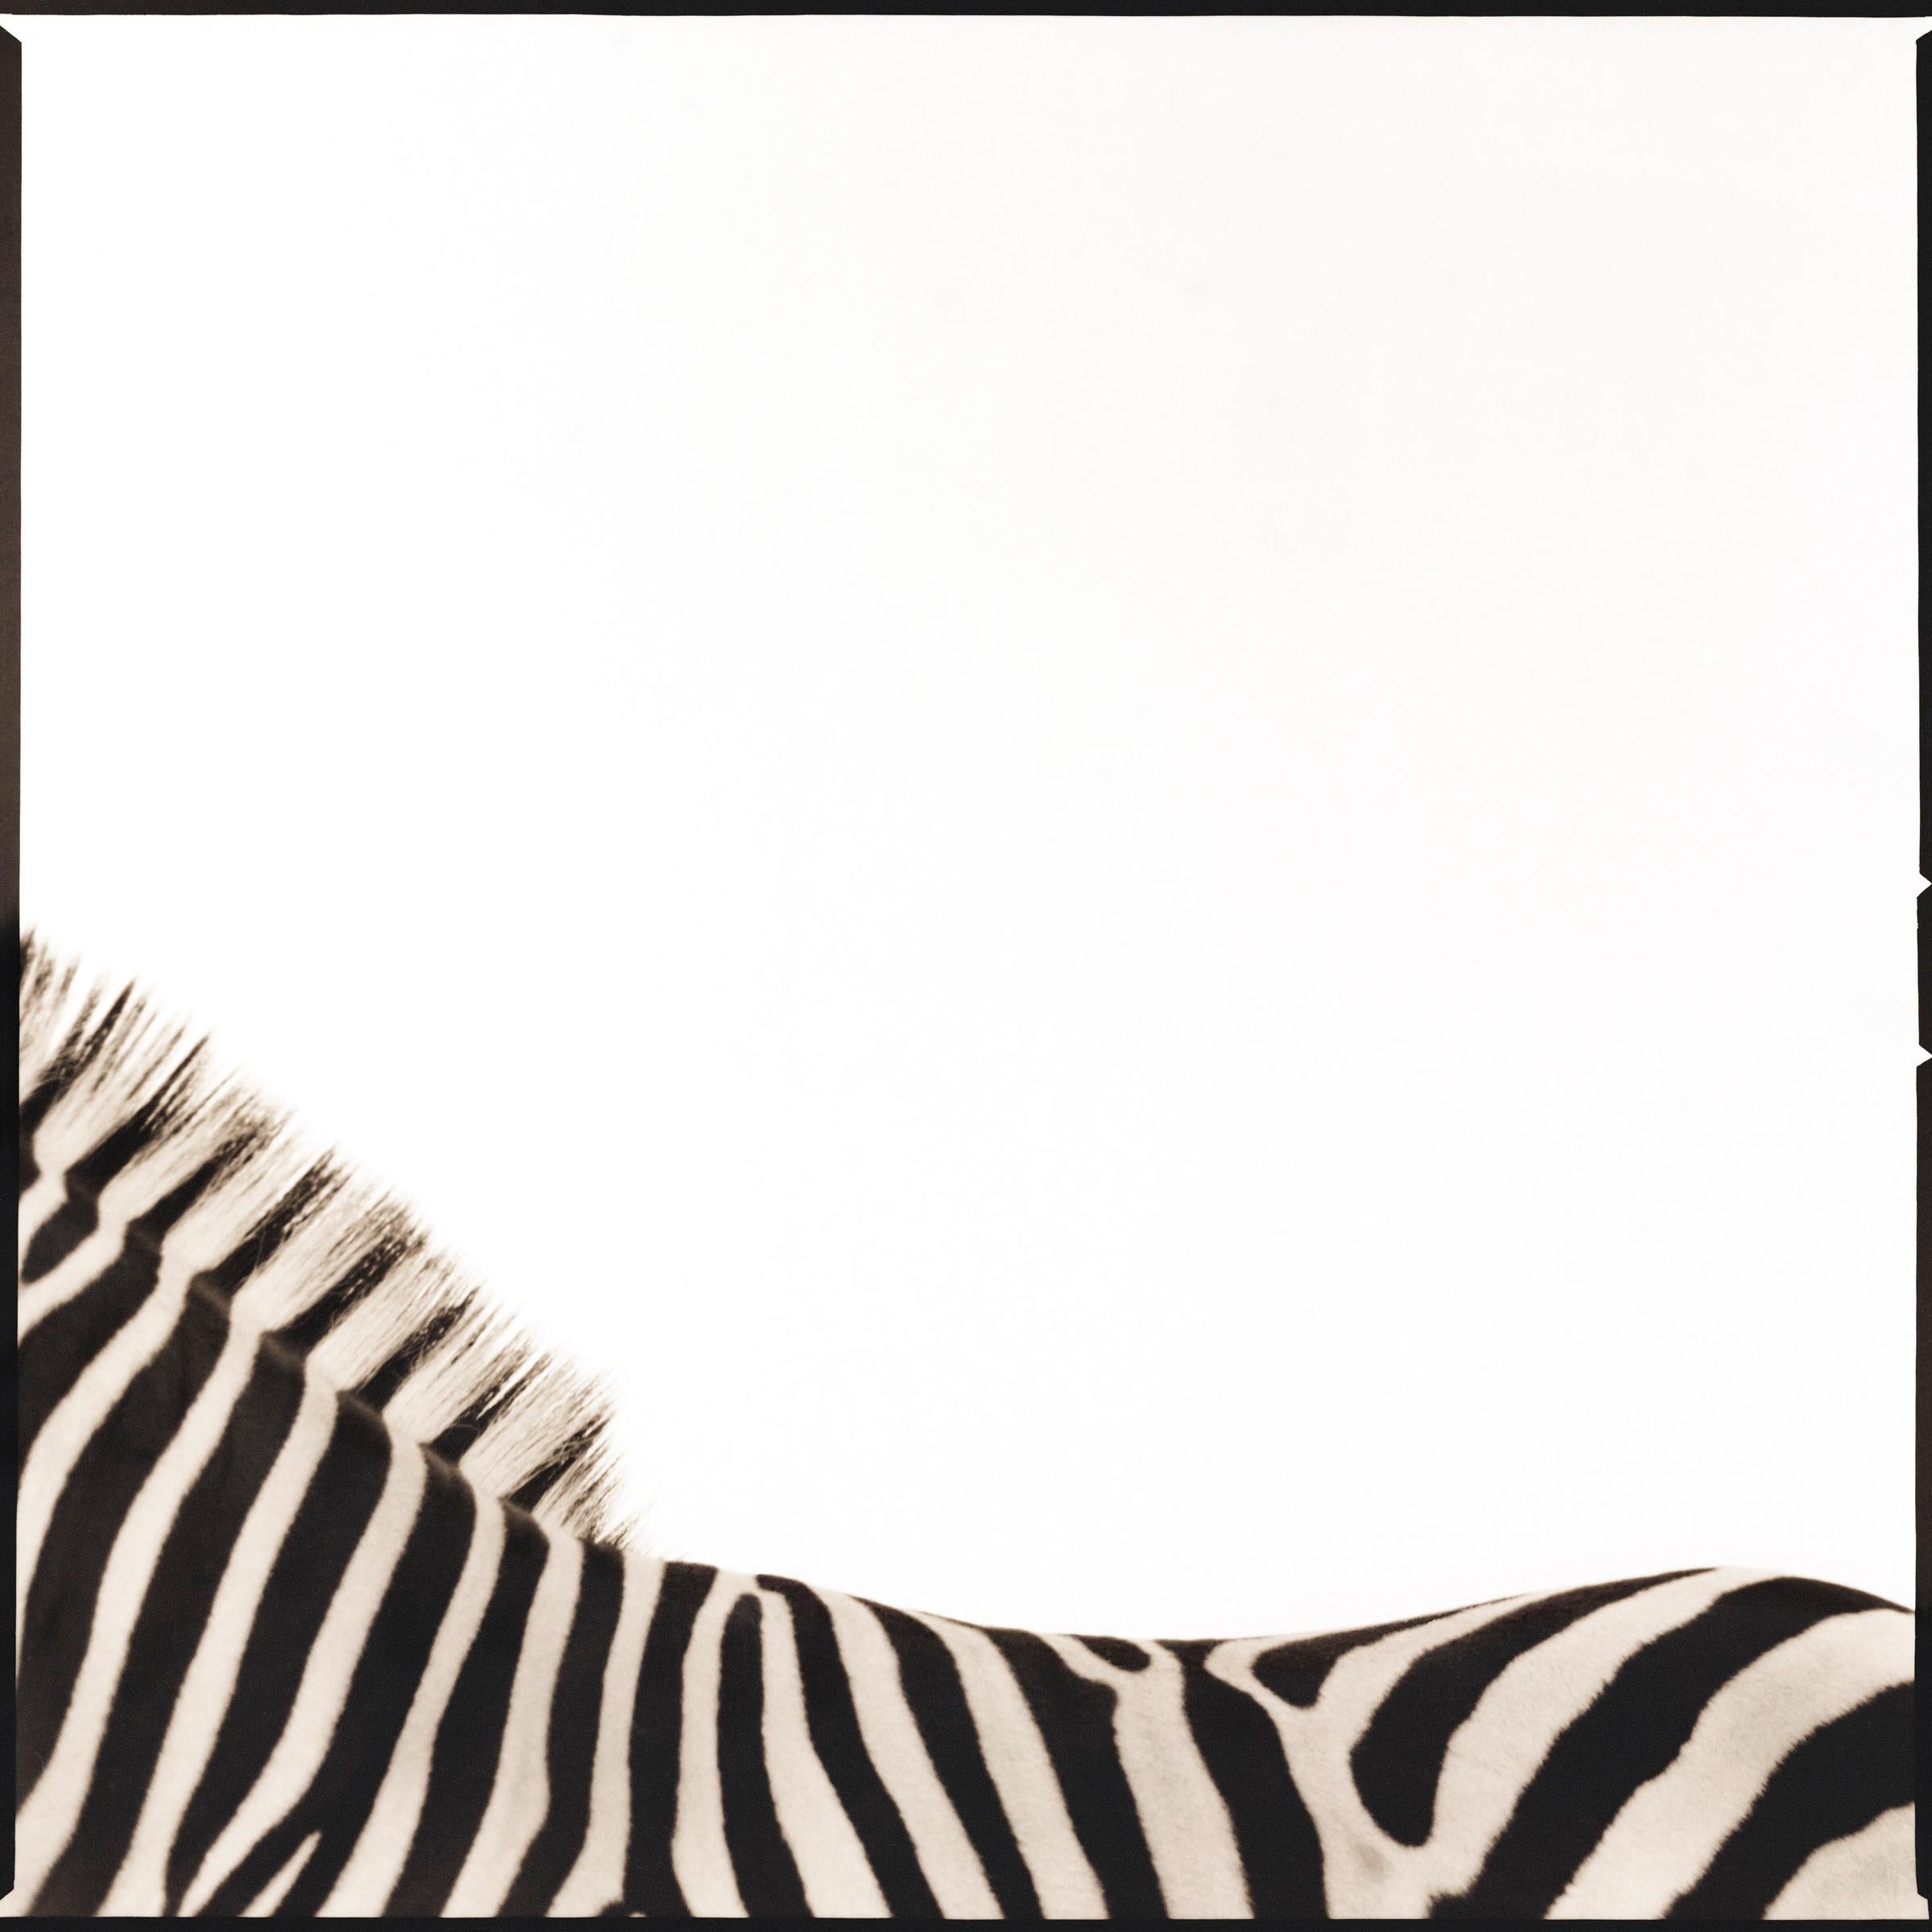 Zebra I (19/40) - Photograph by Nine Francois